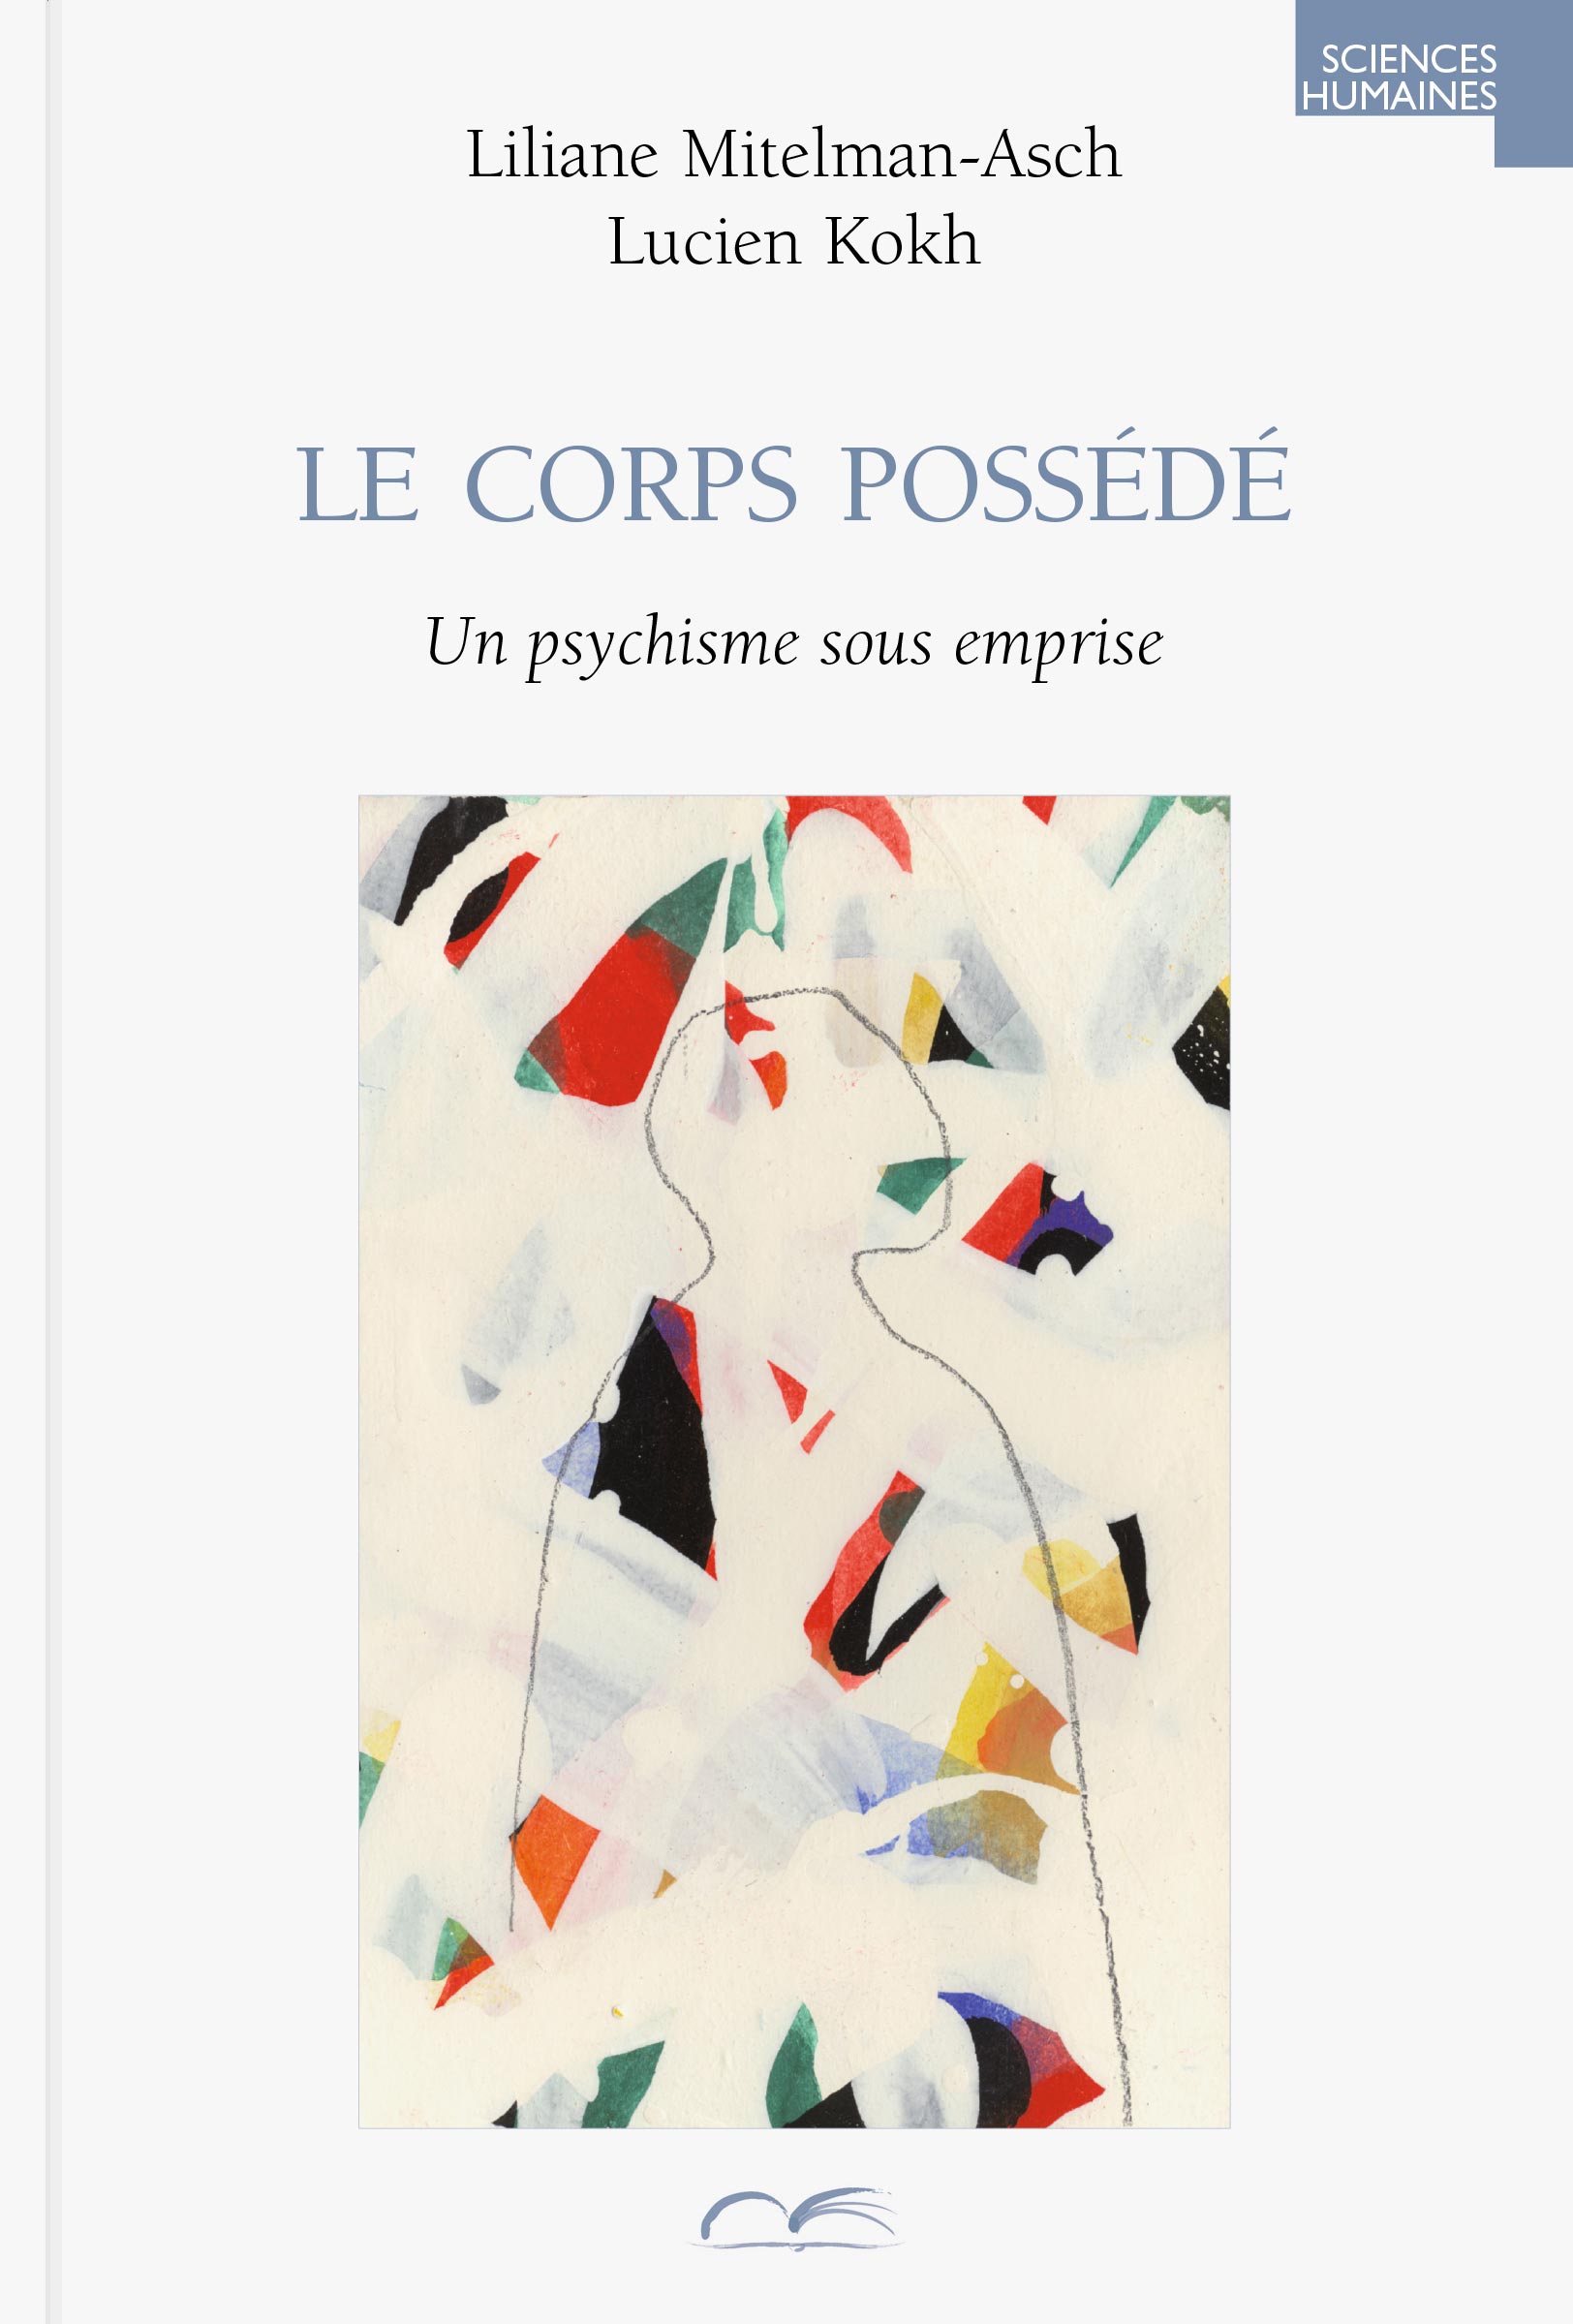 couverture du livre « Le corps possédé. Un psychisme sous emprise », de Liliane Mitelman et Lucien Kokh. ISBN : 978-2-35869-007-2.